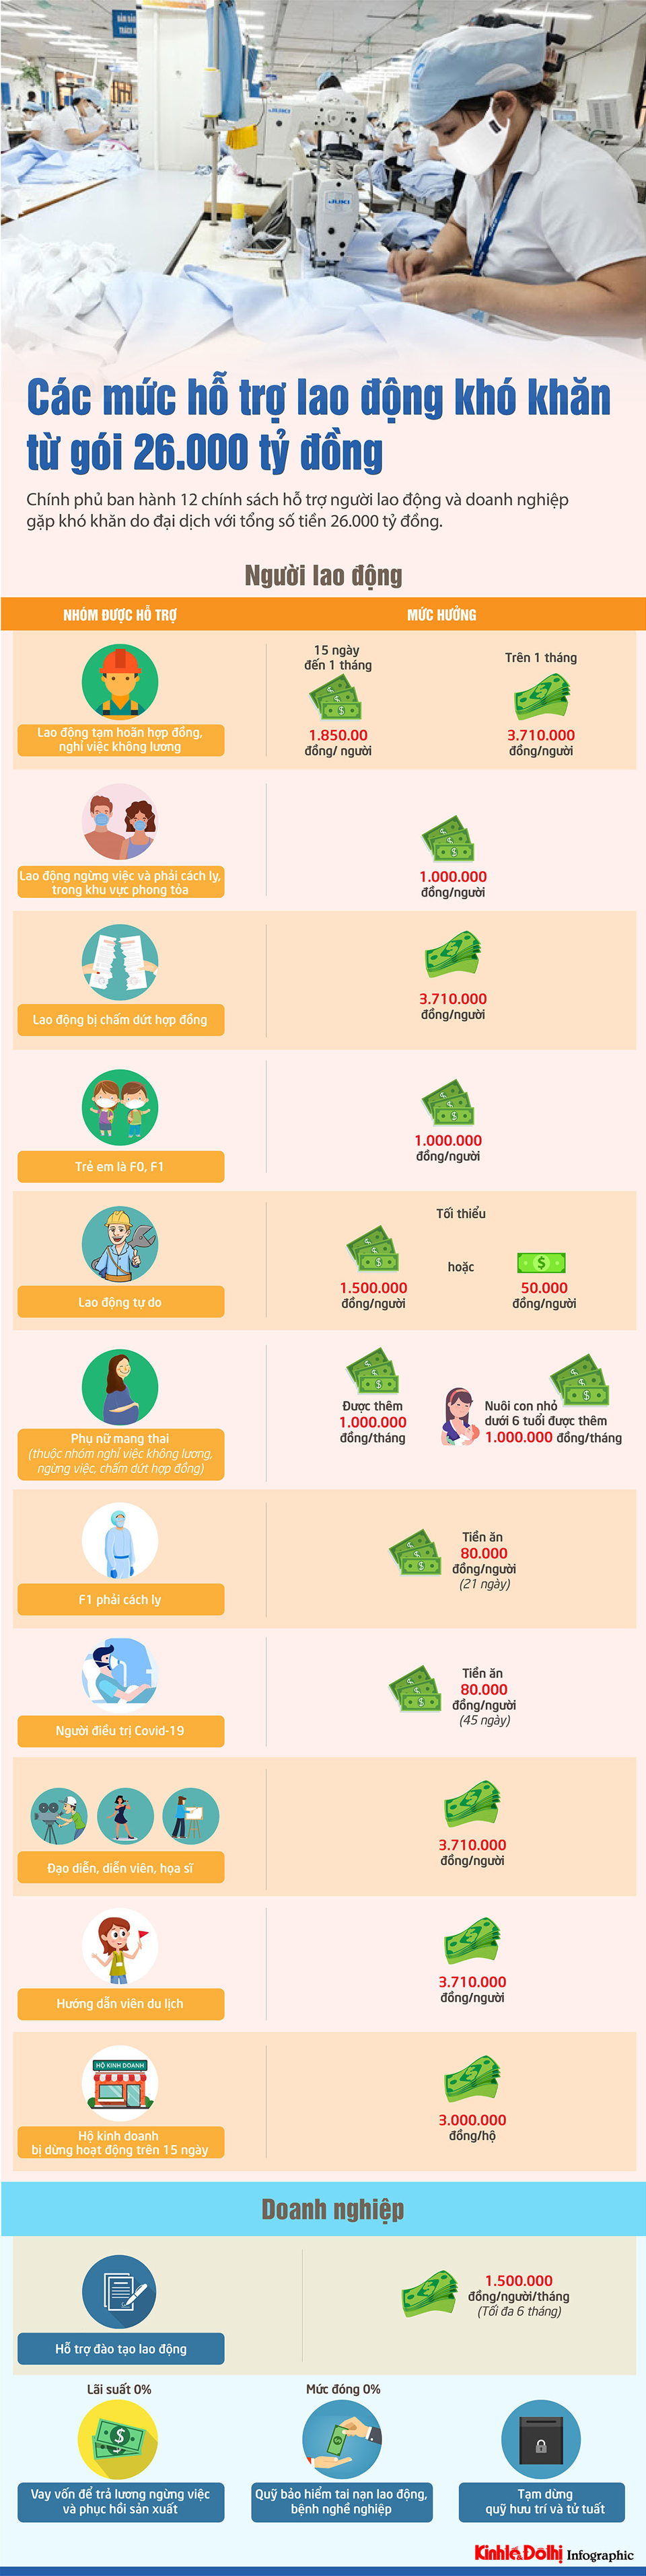 [Infographic] Các mức hỗ trợ lao động khó khăn từ gói 26.000 tỷ đồng - Ảnh 1